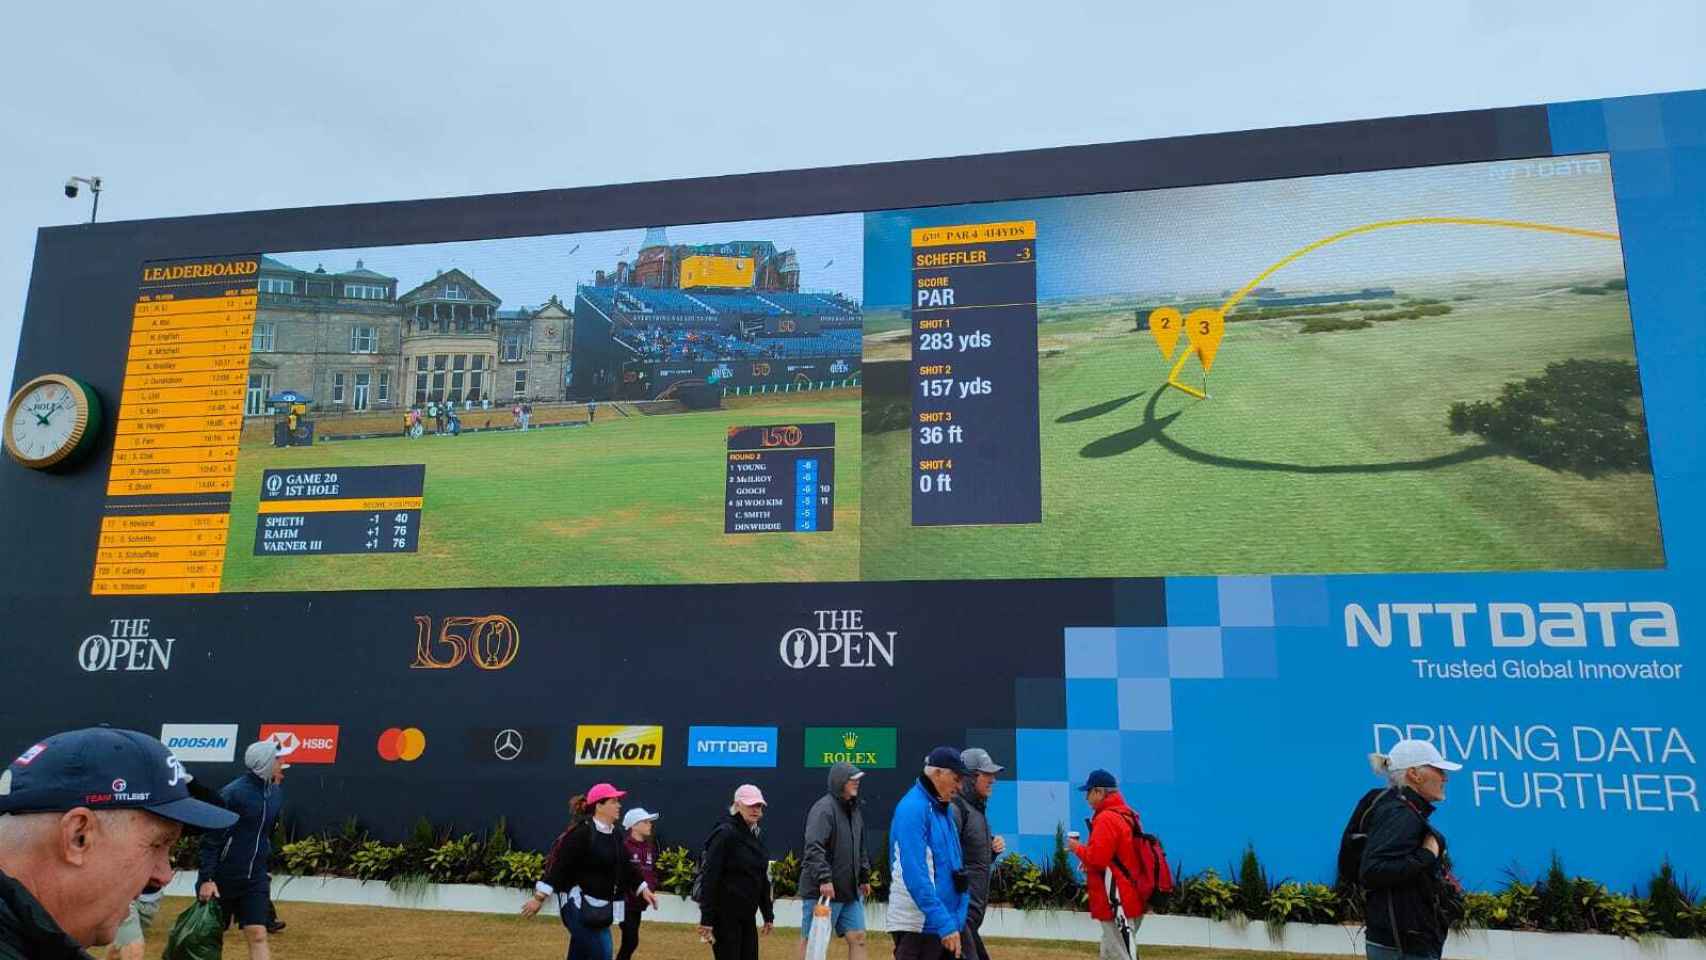 El videomarcador gigante del Open de golf de St. Andrews, situado en la misma entrada general del evento.